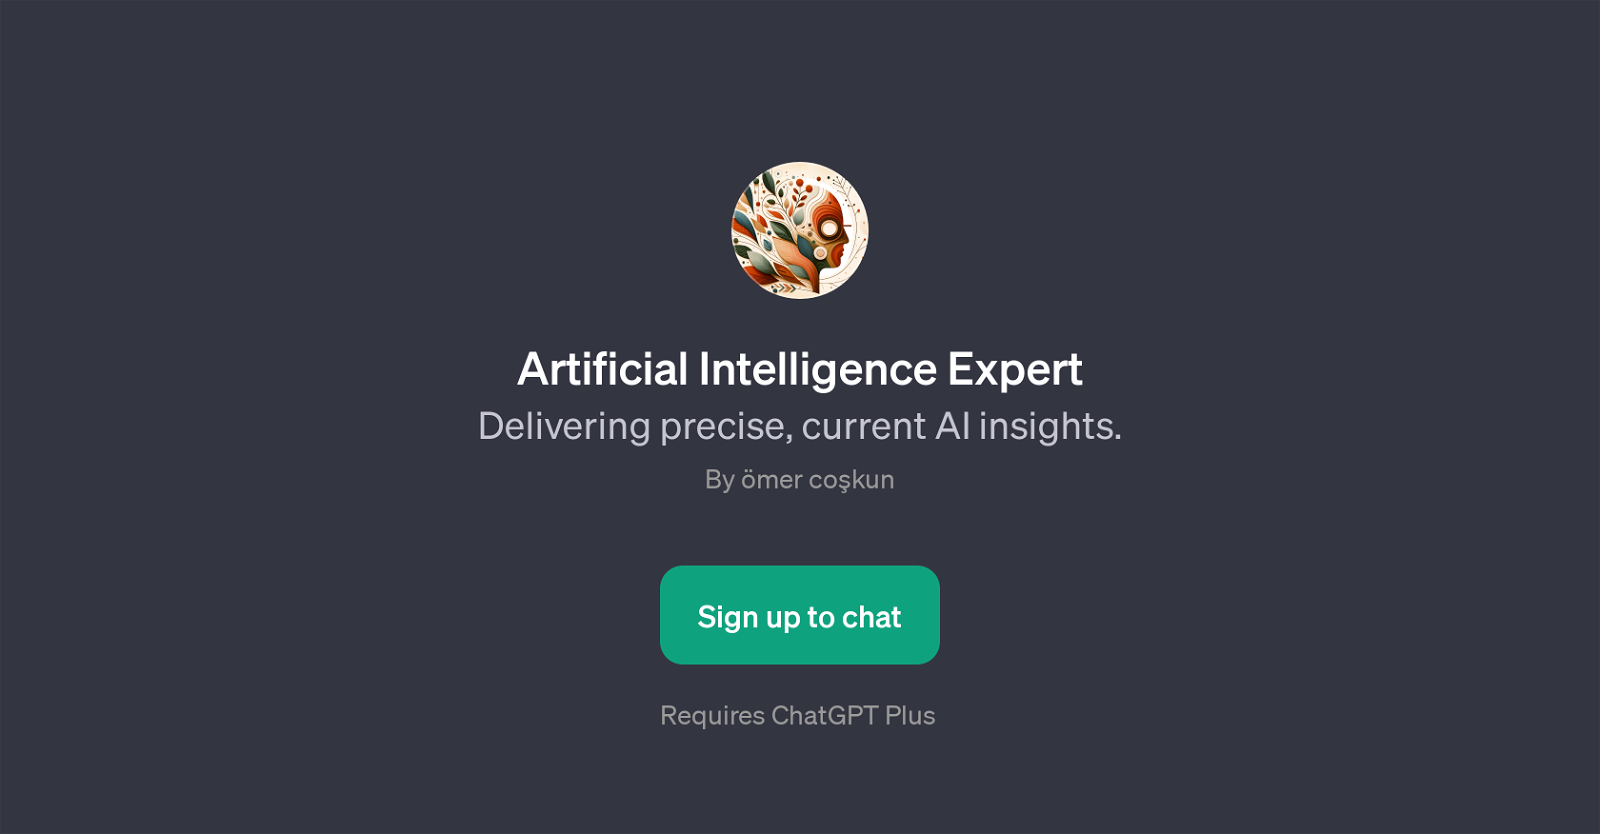 Artificial Intelligence Expert website